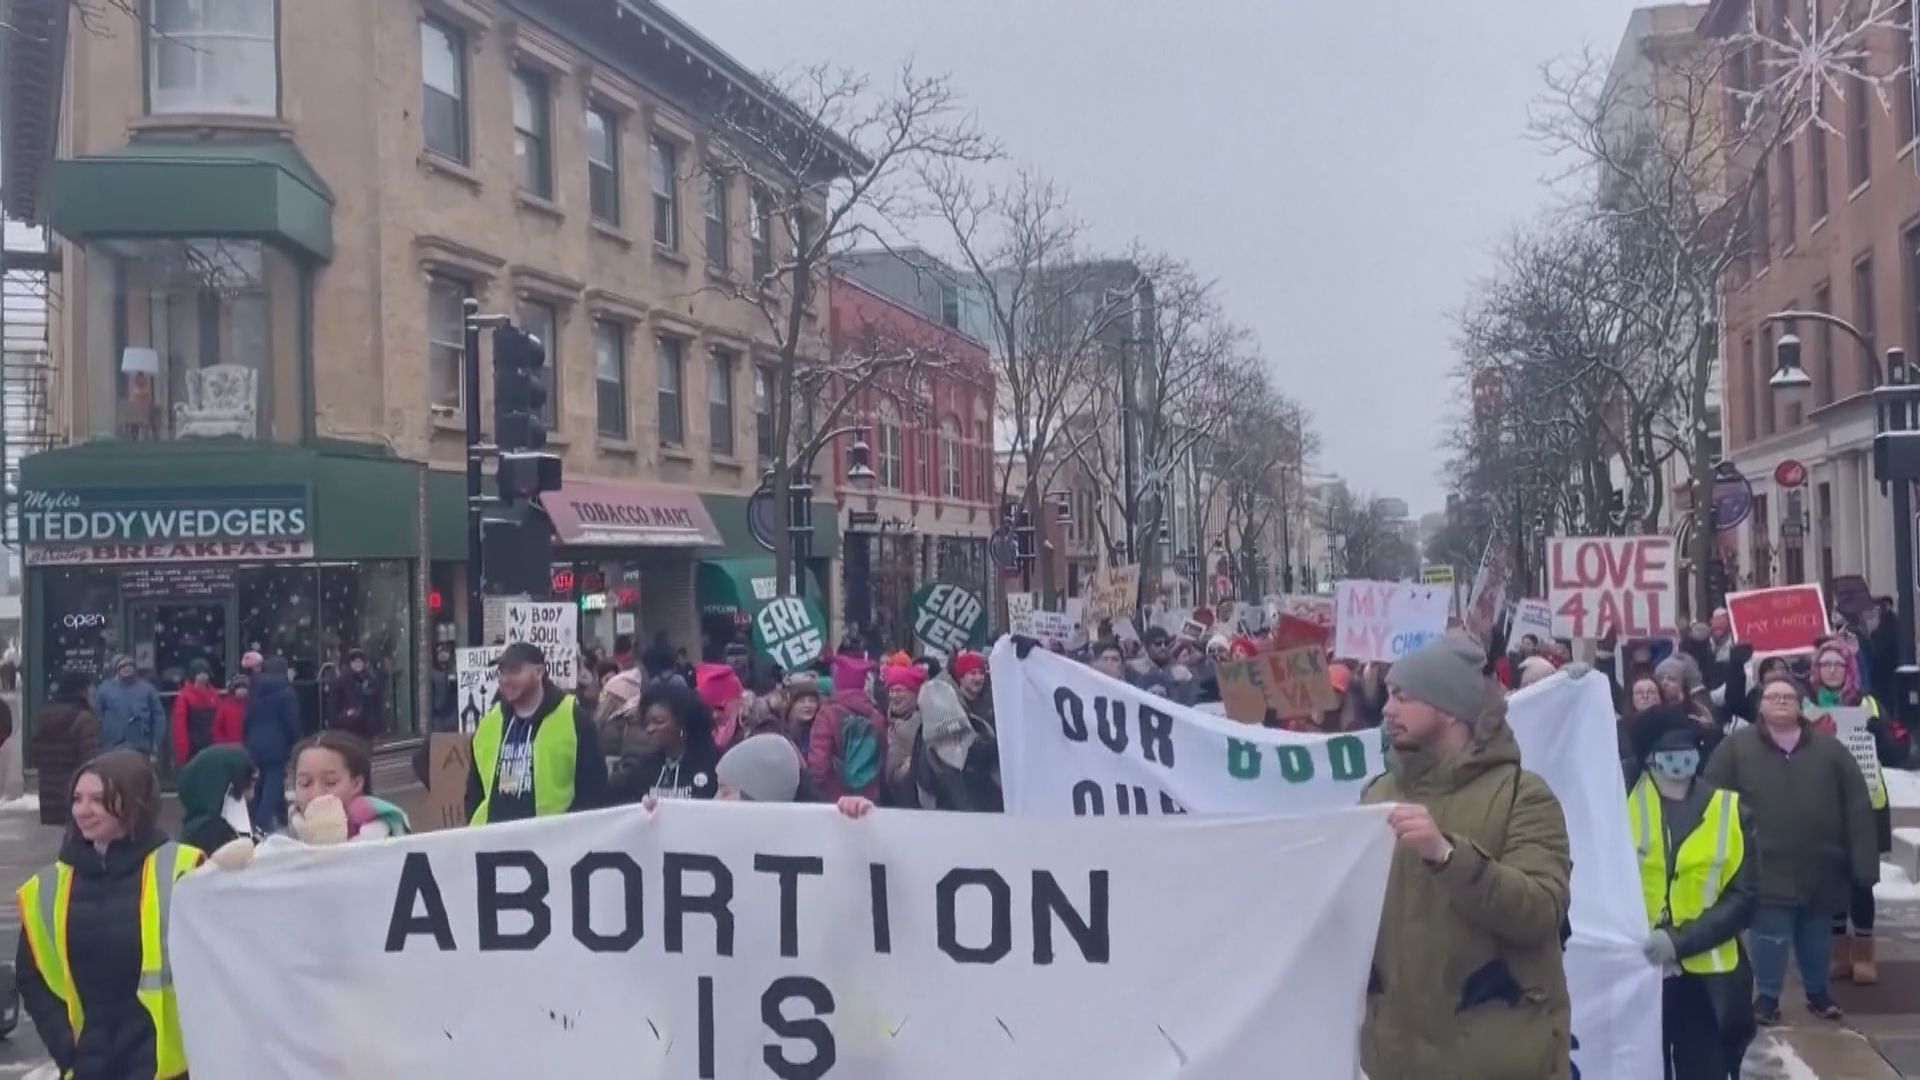 羅訴韋德案五十周年   逾二百場示威支持婦女墮胎權